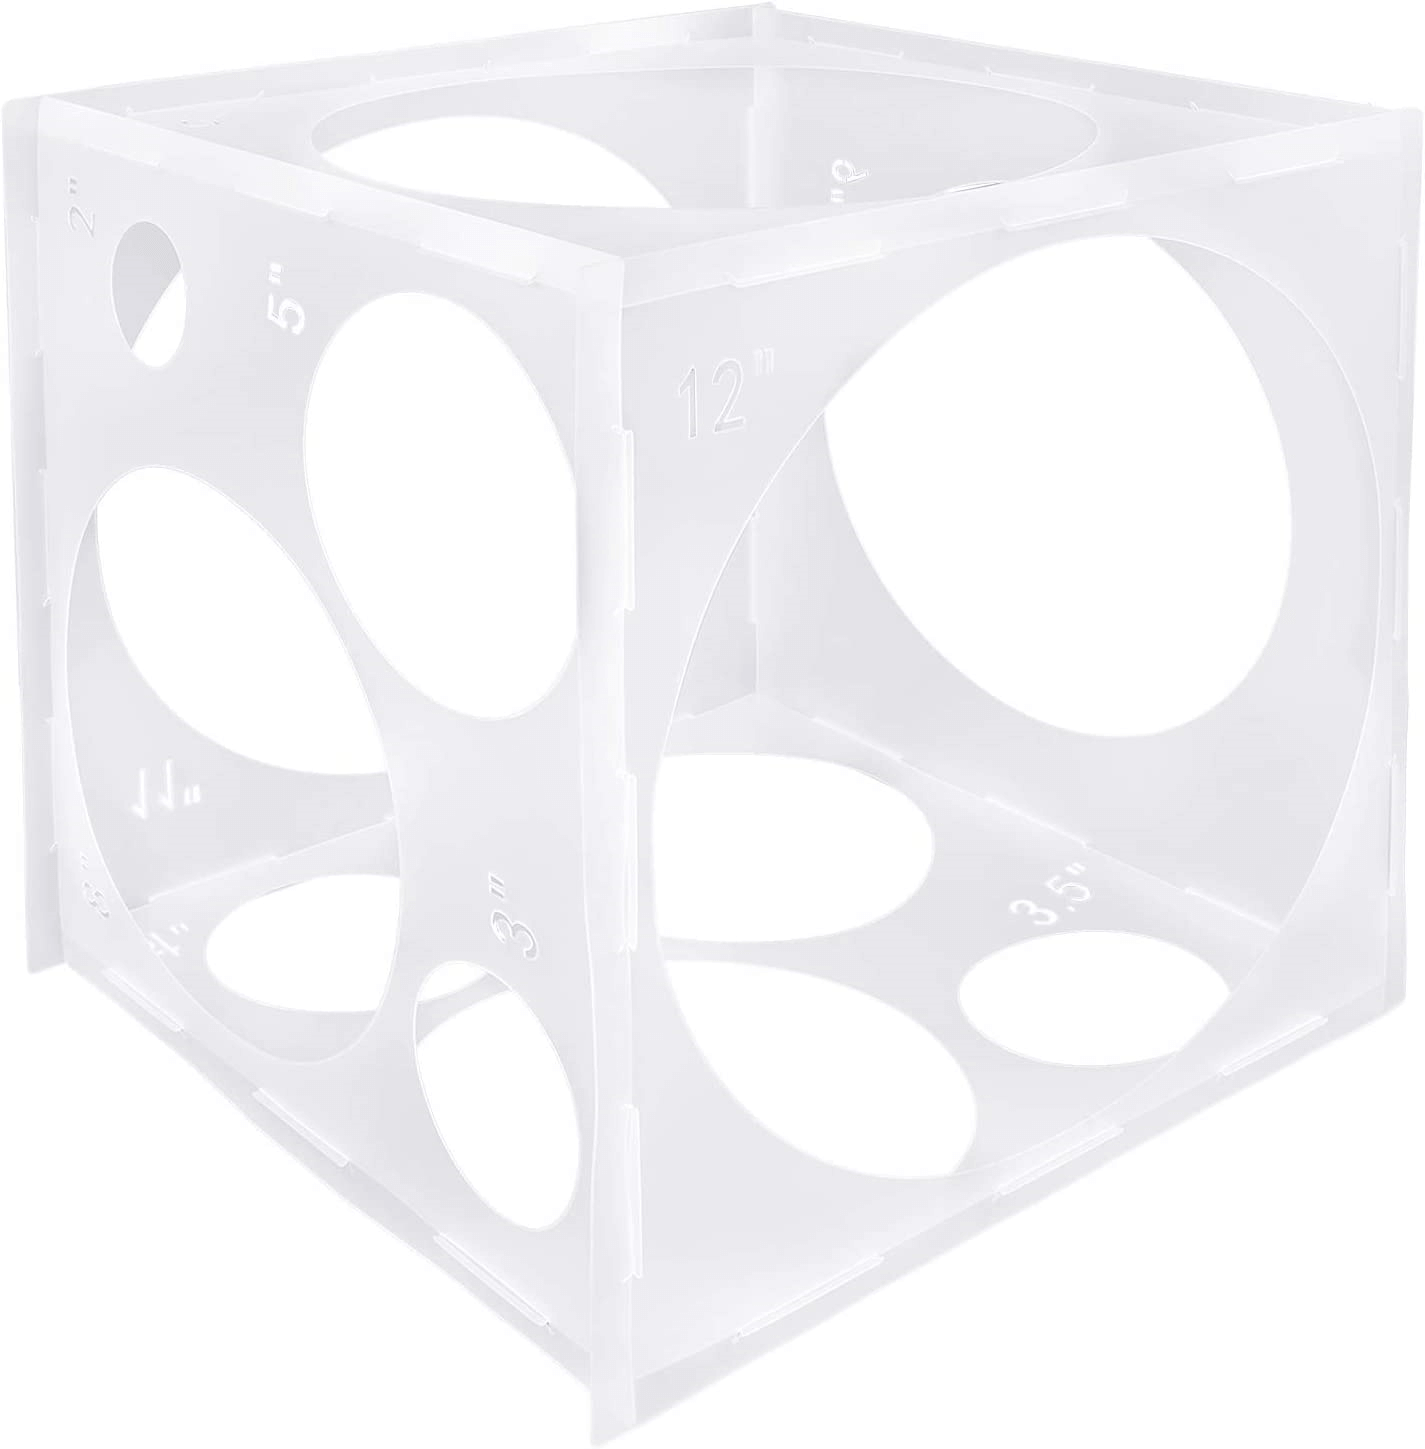 Caja medidora de globos transparente con forma de cubo de herramienta de medición